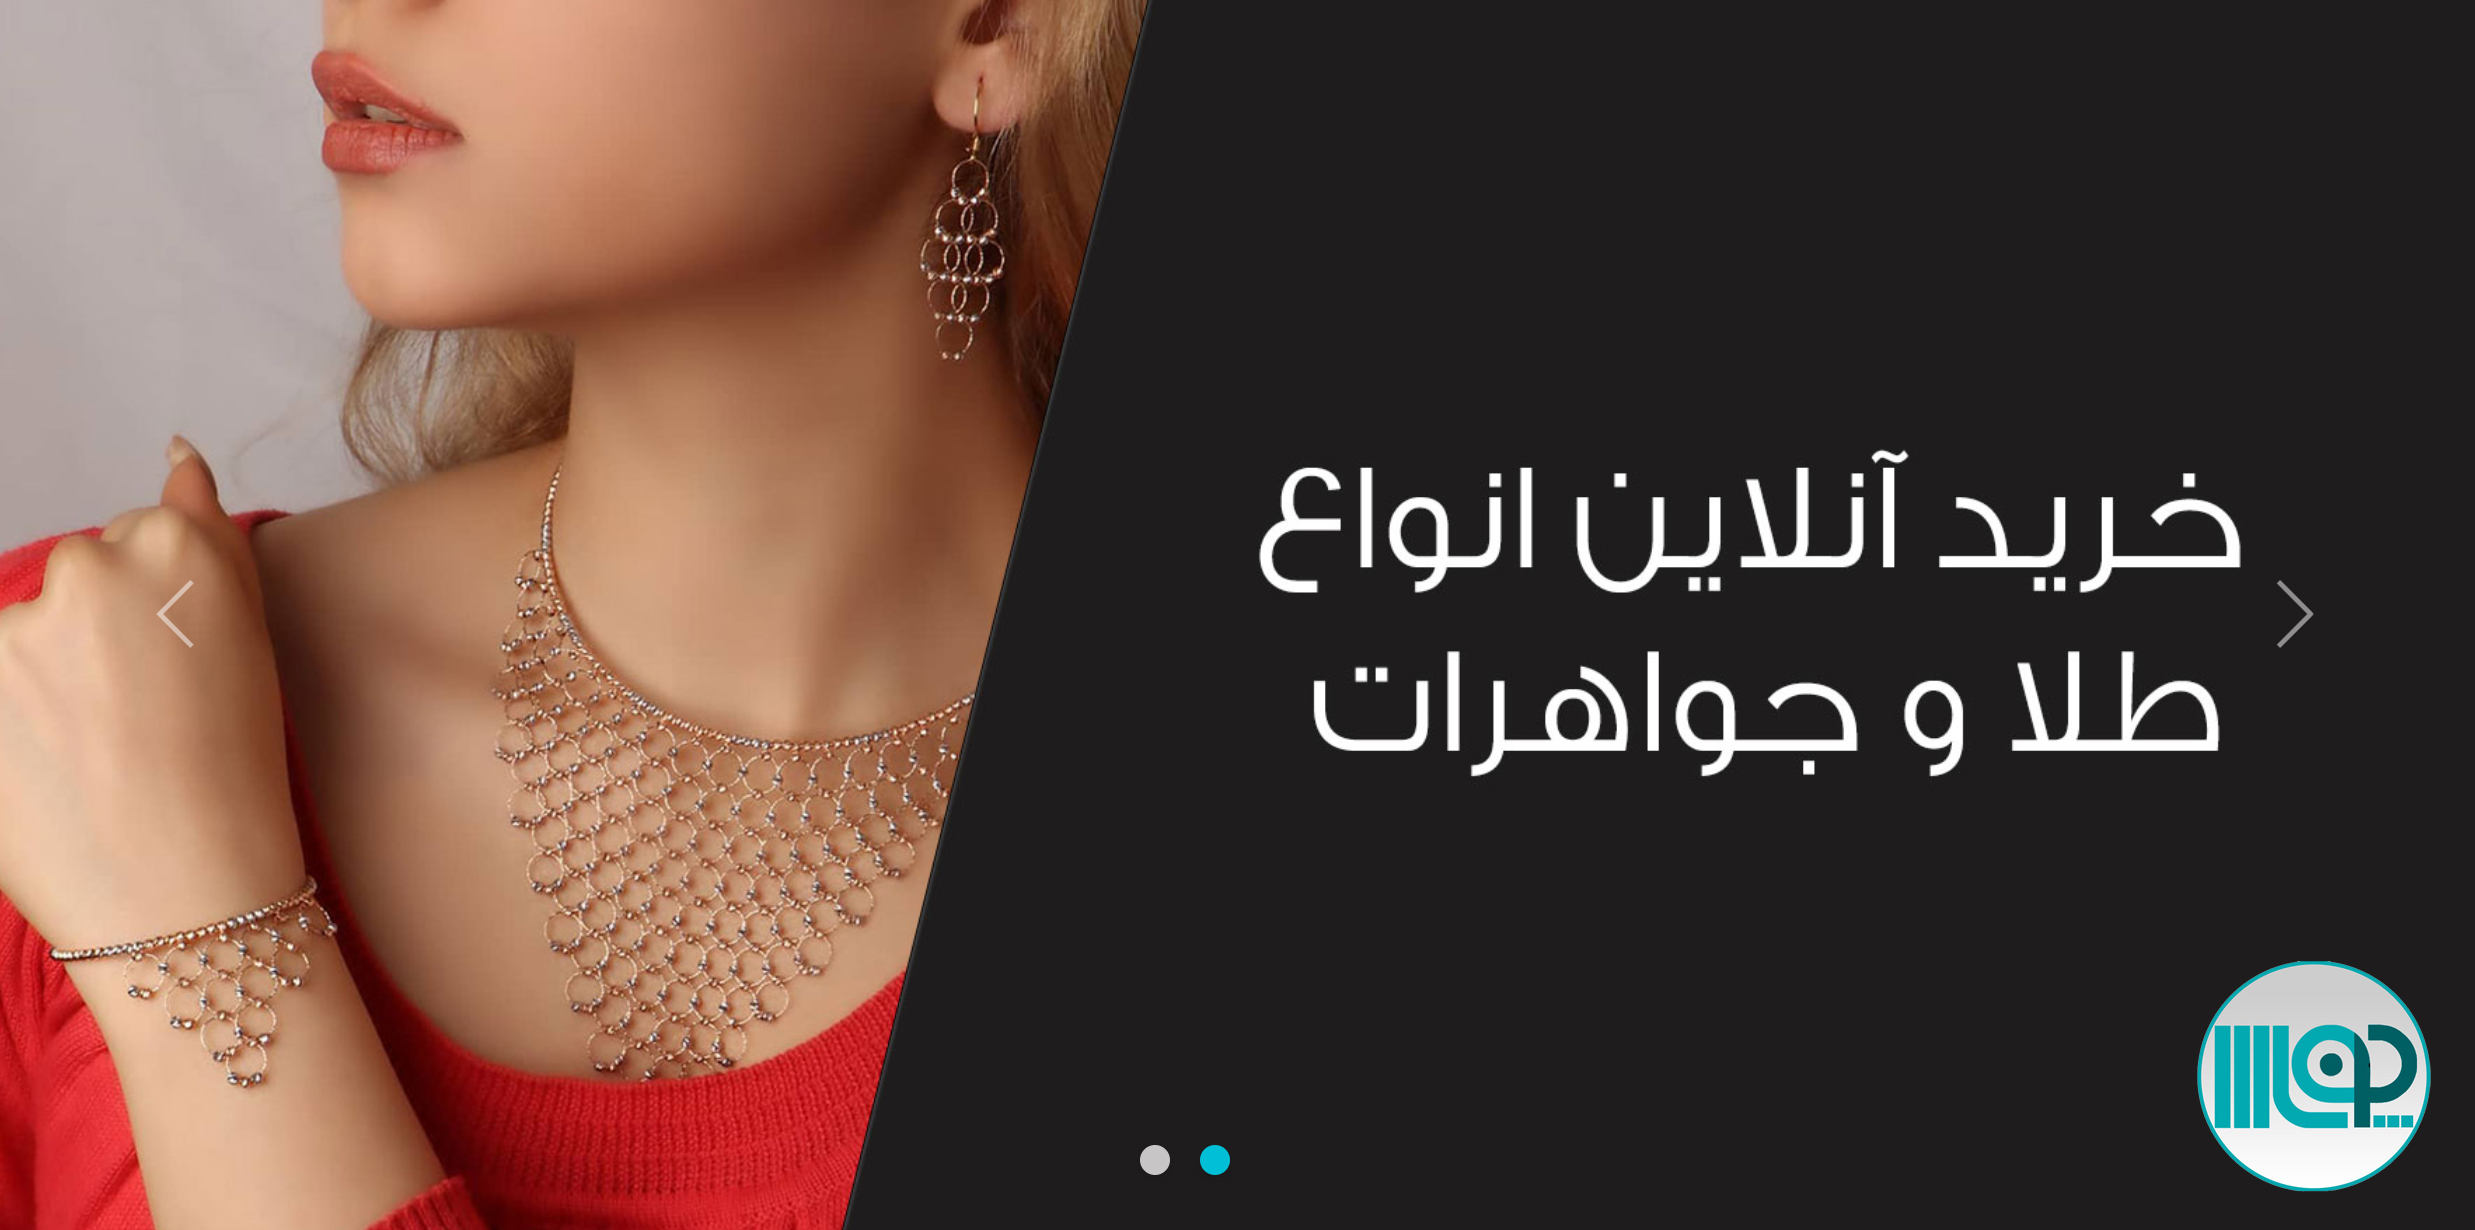 طراحی سایت طلا و جواهر در تبریز